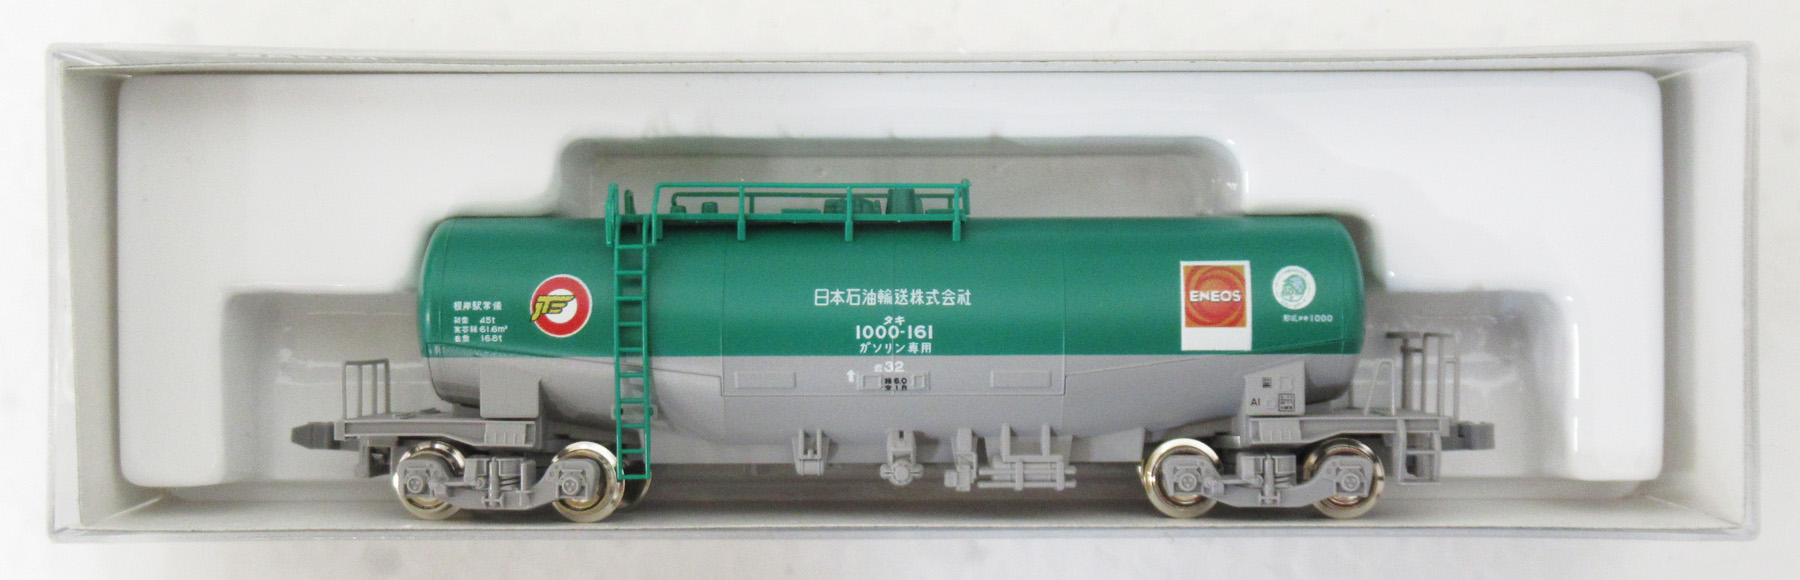 Nゲージ KATO 10-1167 タキ1000形 日本石油輸送色 ENEOS エコレール